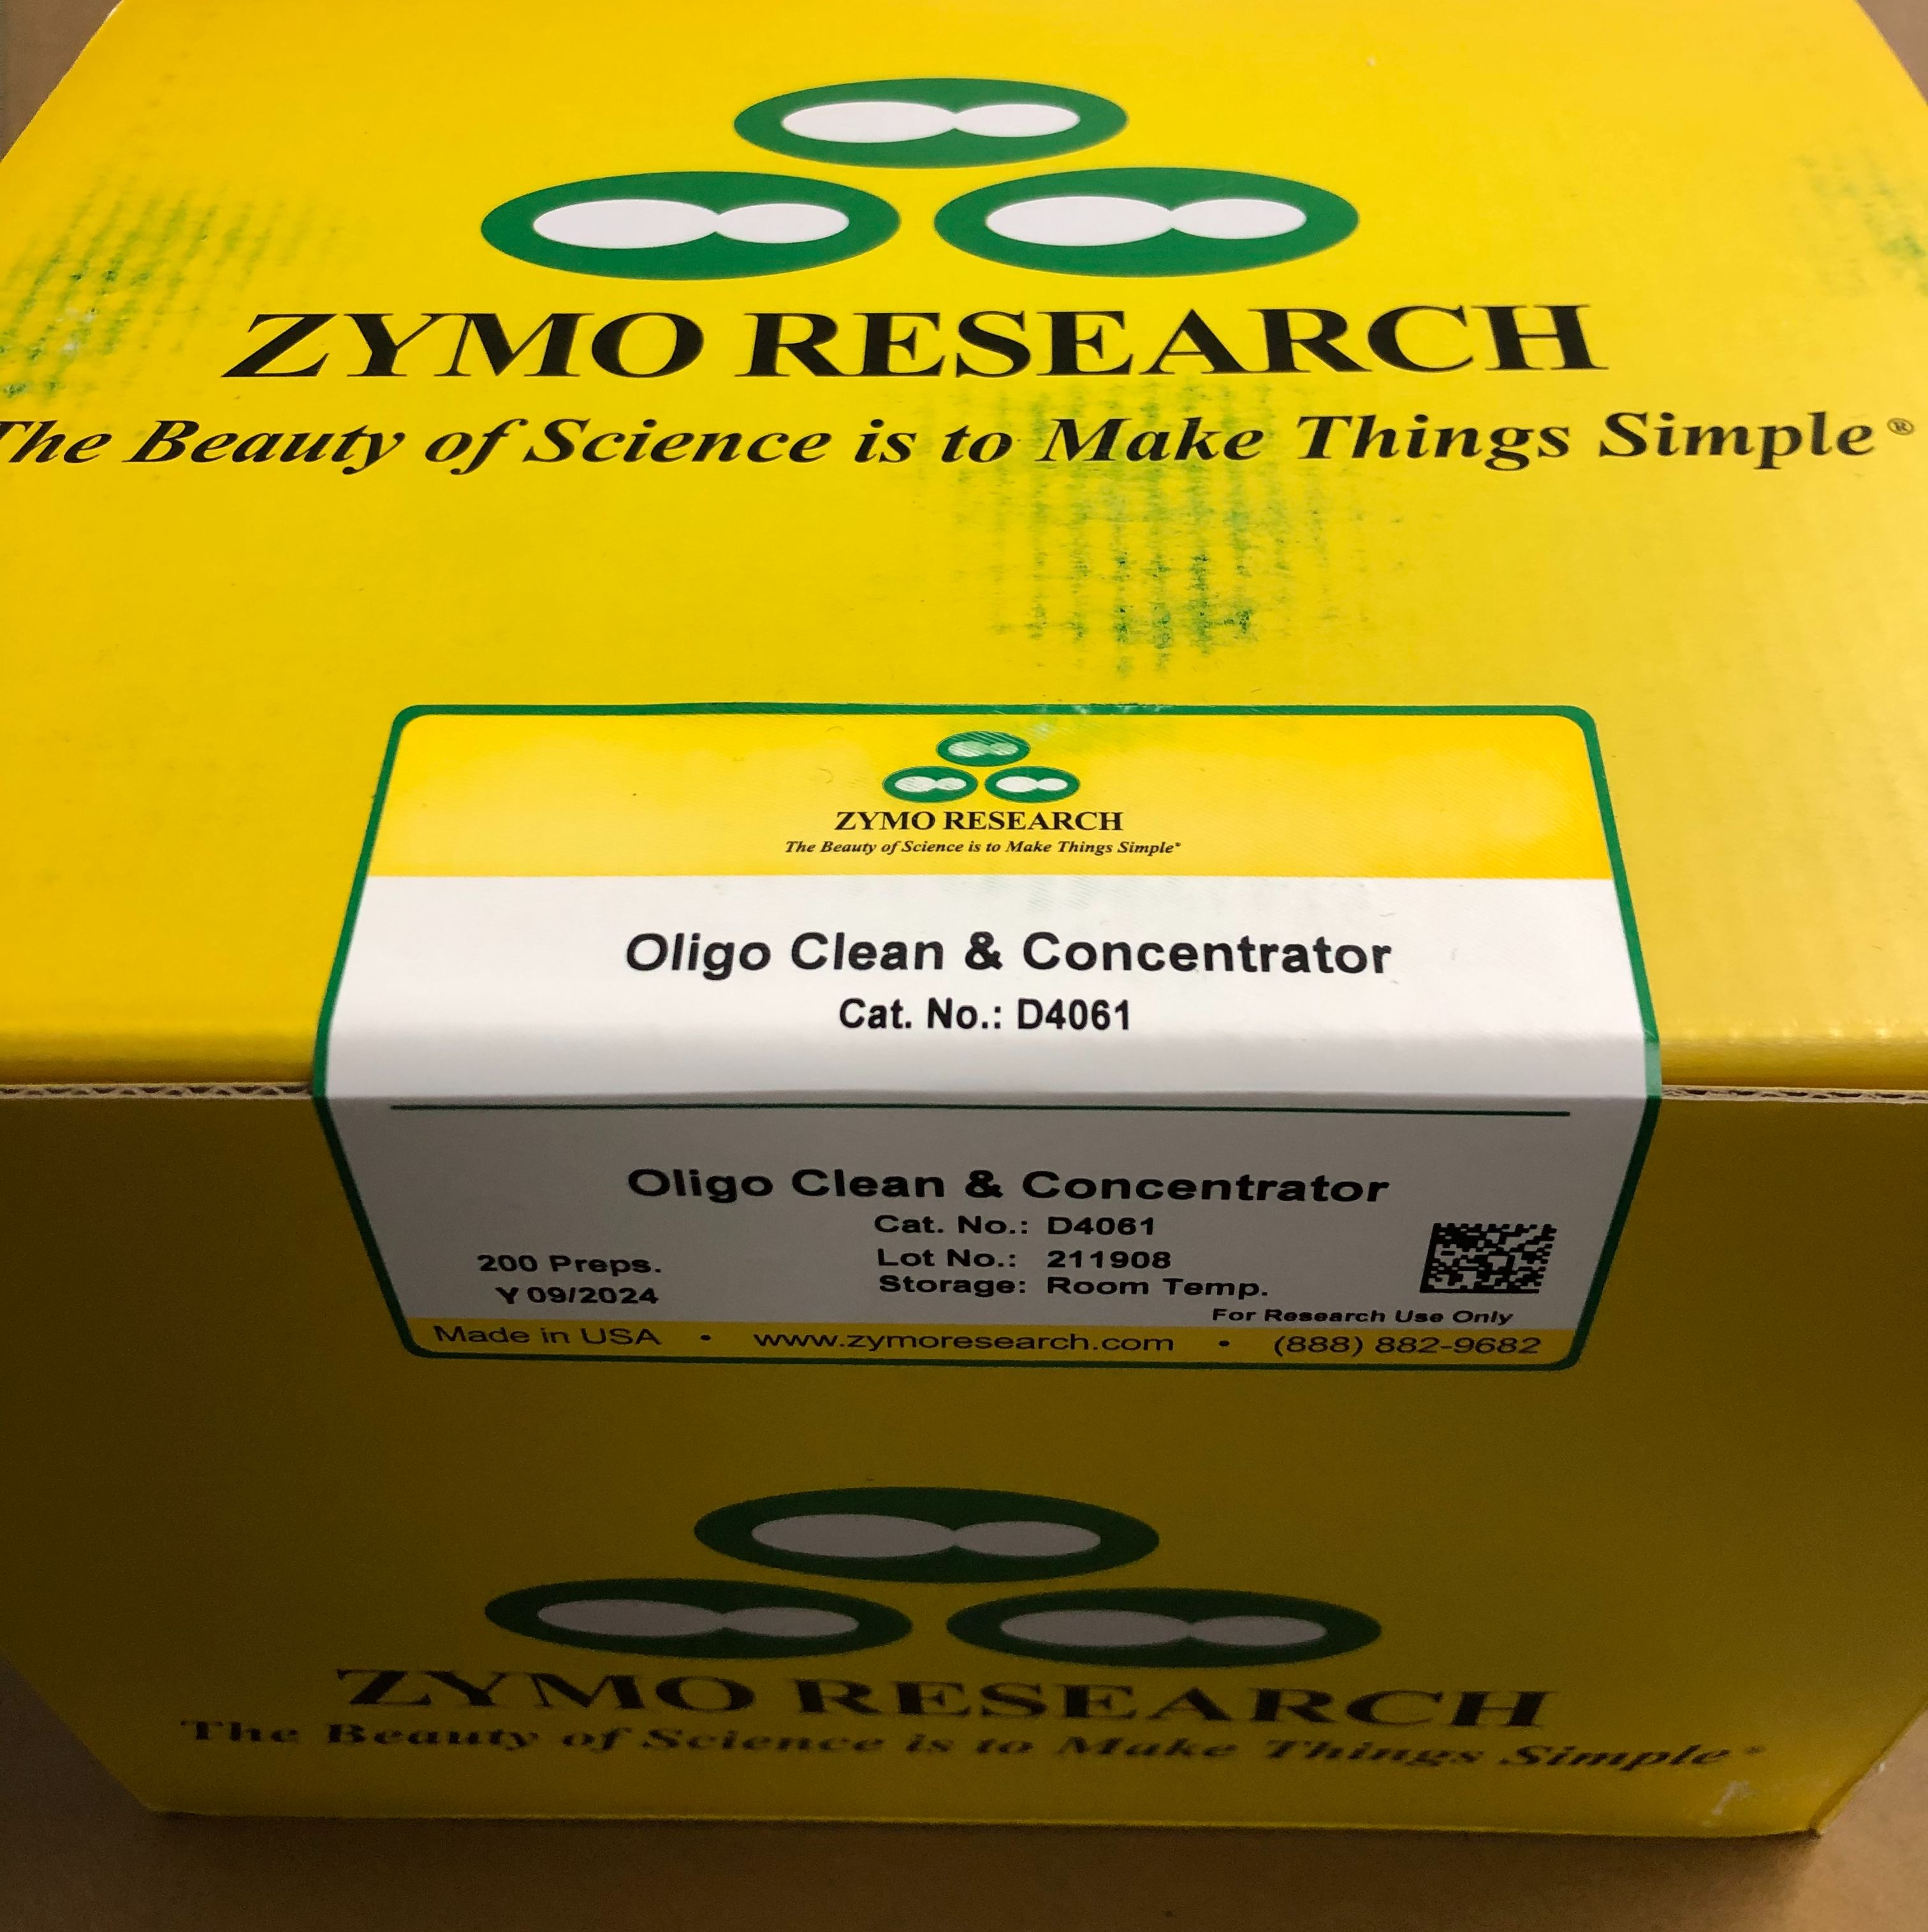 Zymo Research货号D4061现货Oligo纯化与浓缩试剂盒13611631389上海睿安生物